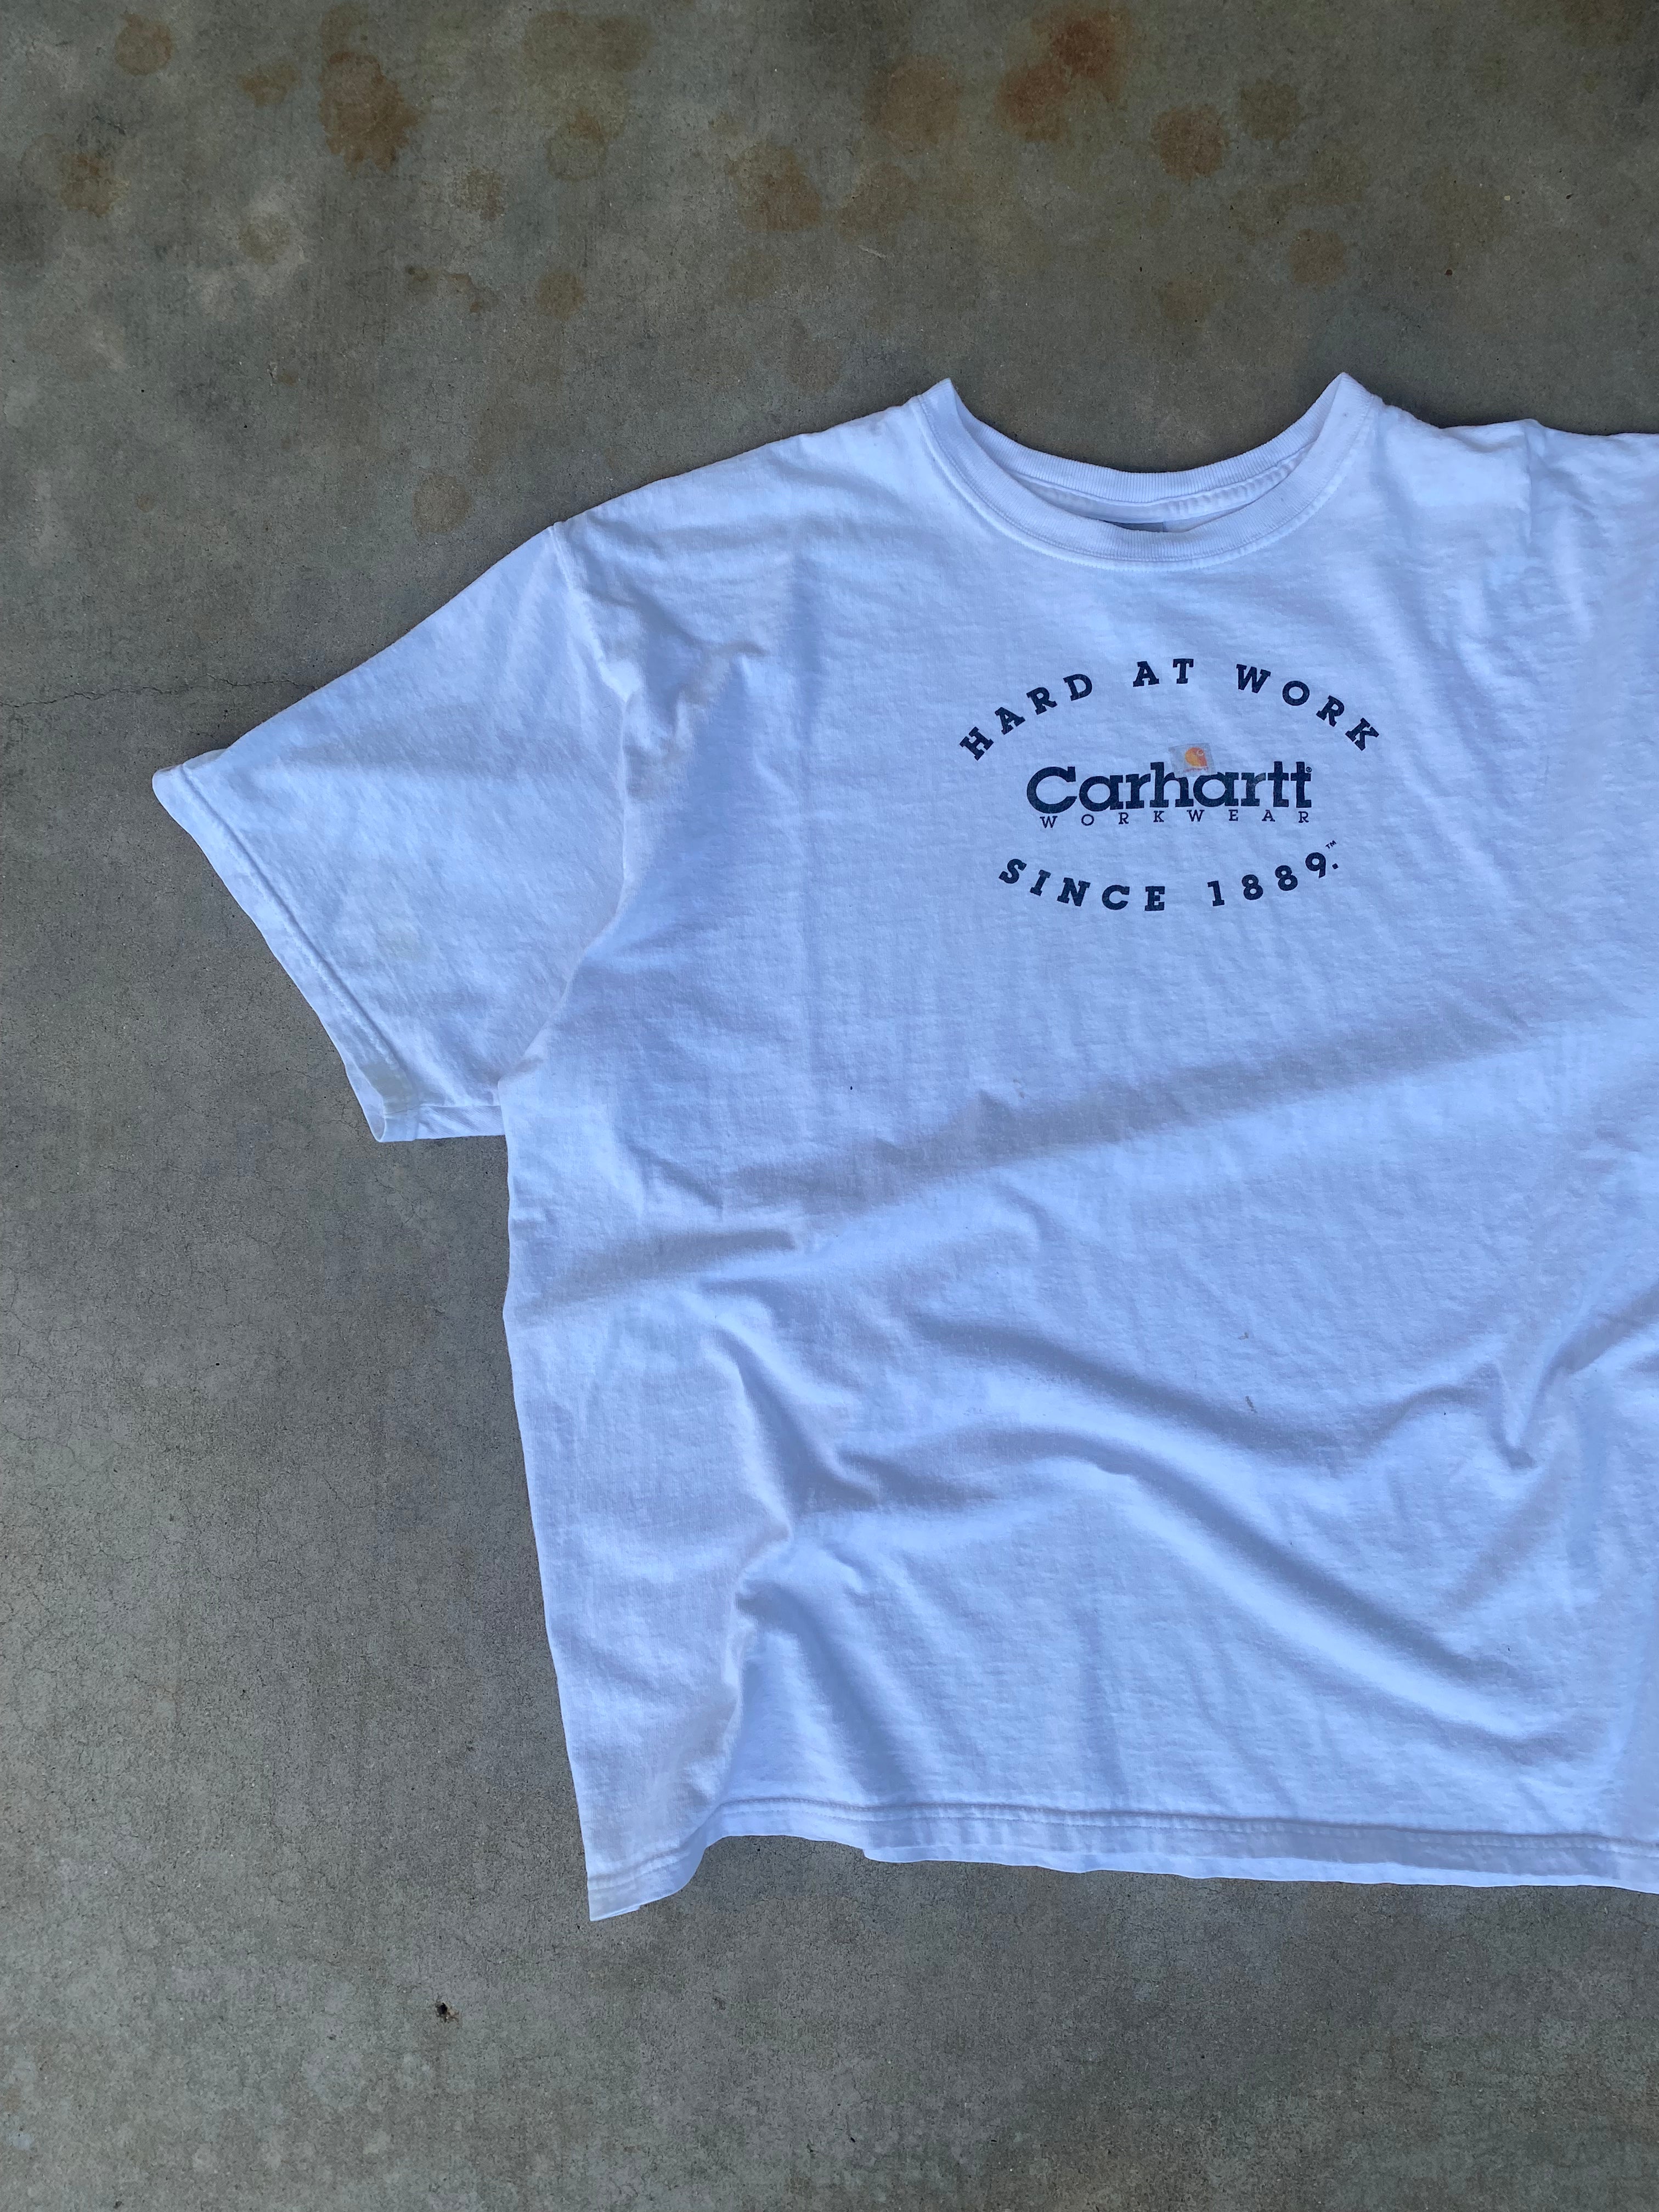 1990s Worn Carhartt T-Shirt (XL)